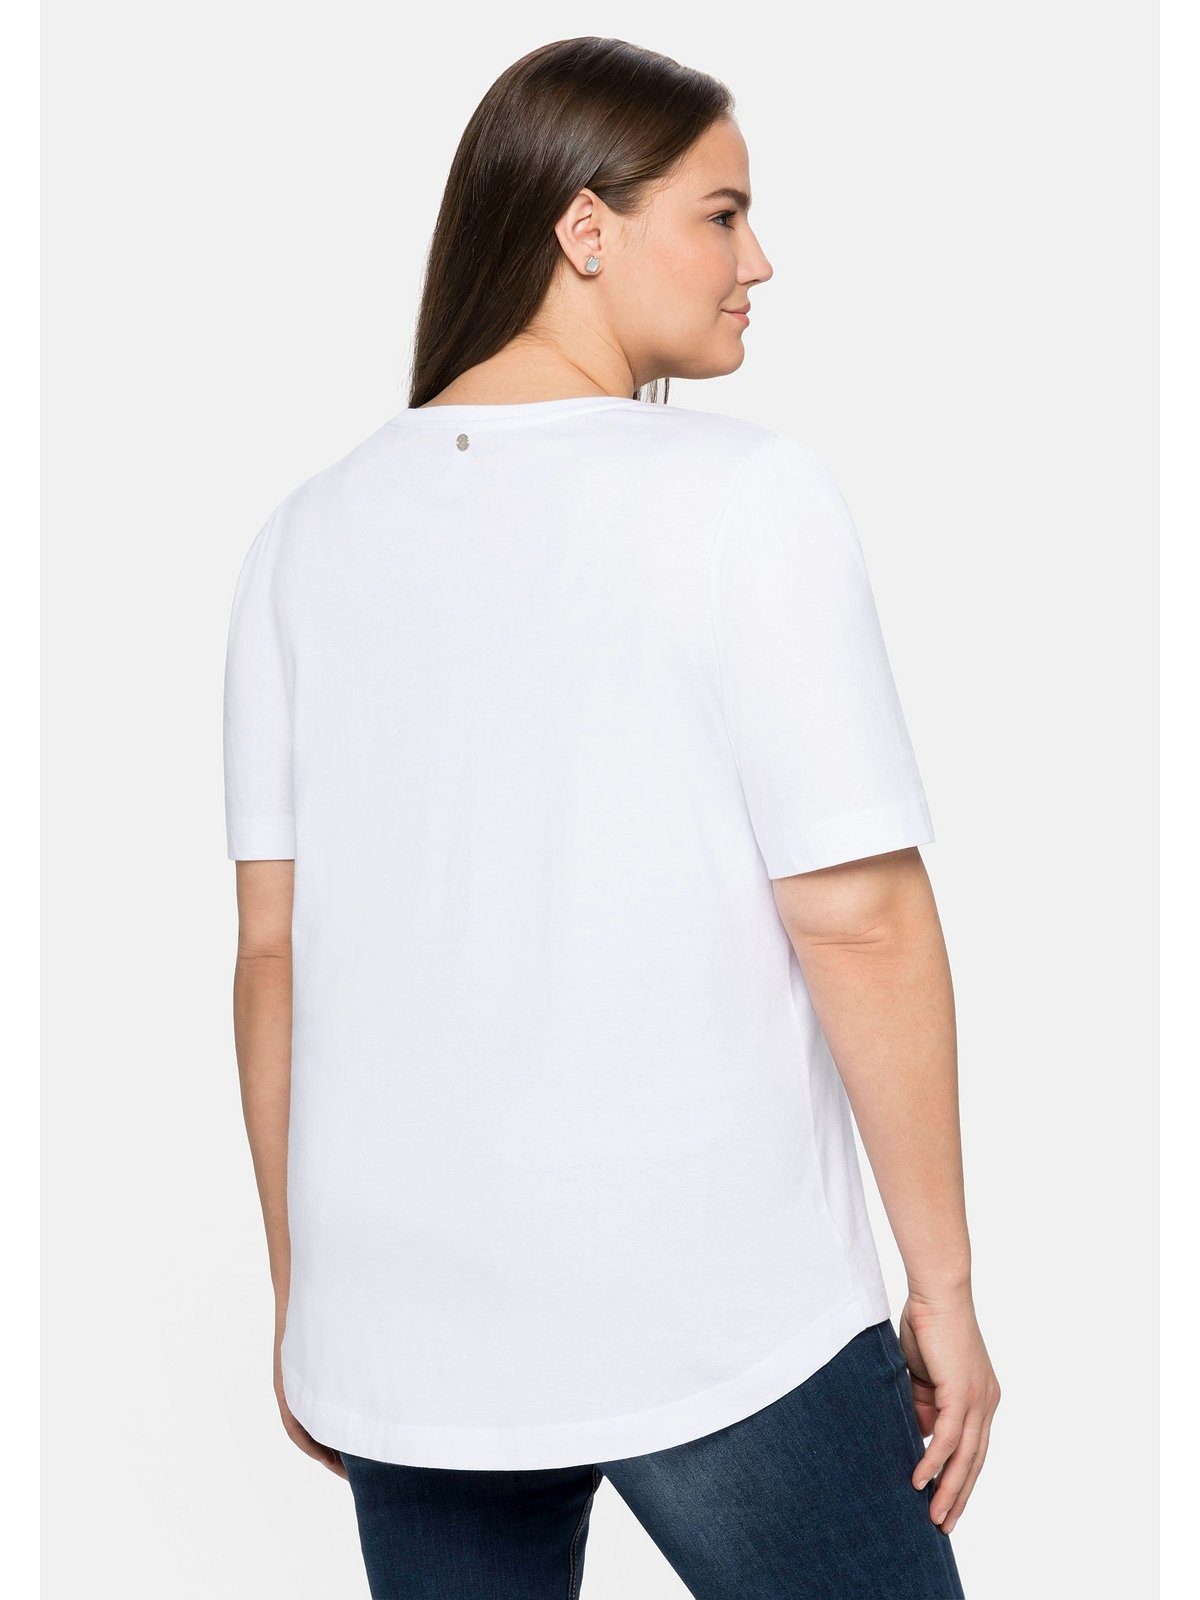 T-Shirt Sheego weiß Große Größen Baumwolle mit aus Frontdruck